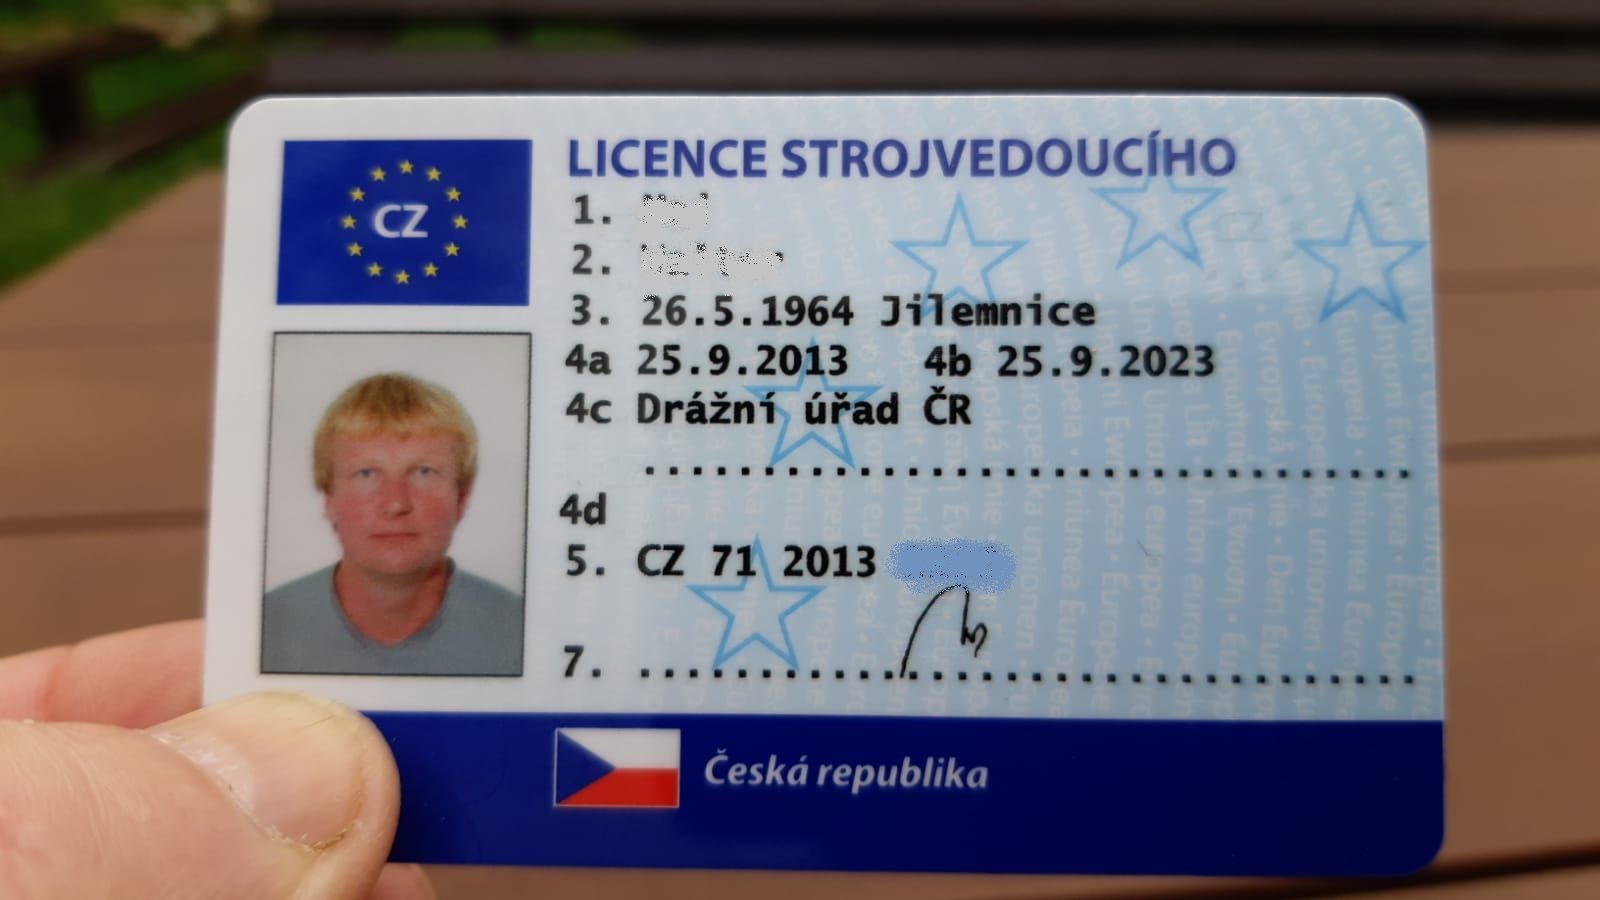 Licence strojvedoucího, ilustrační foto. Pramen: Drážní úřad